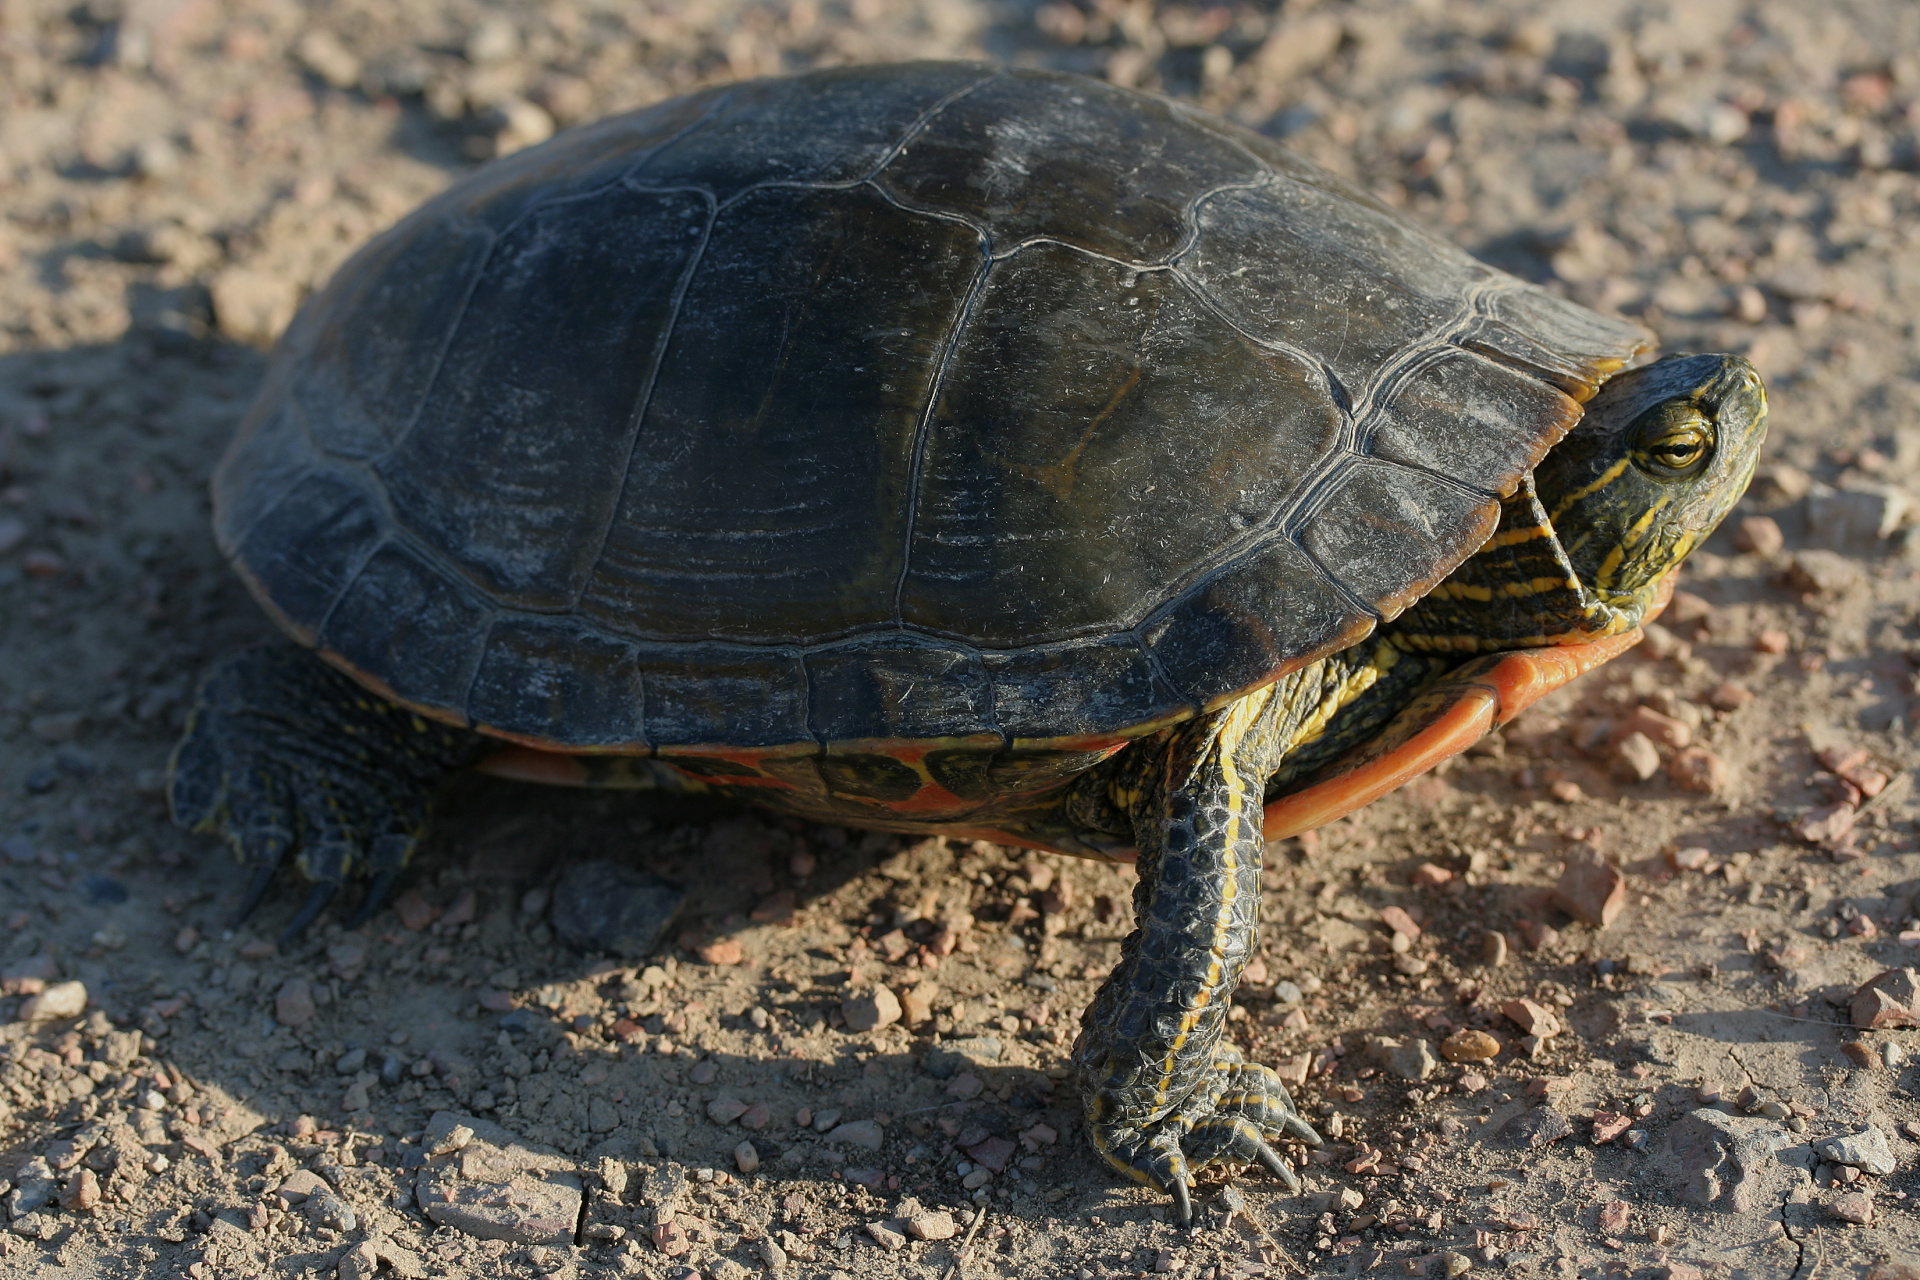 Chrysemys picta (Painted Turtle) (Podróże » USA: Na ziemi Czejenów » Zwierzęta)